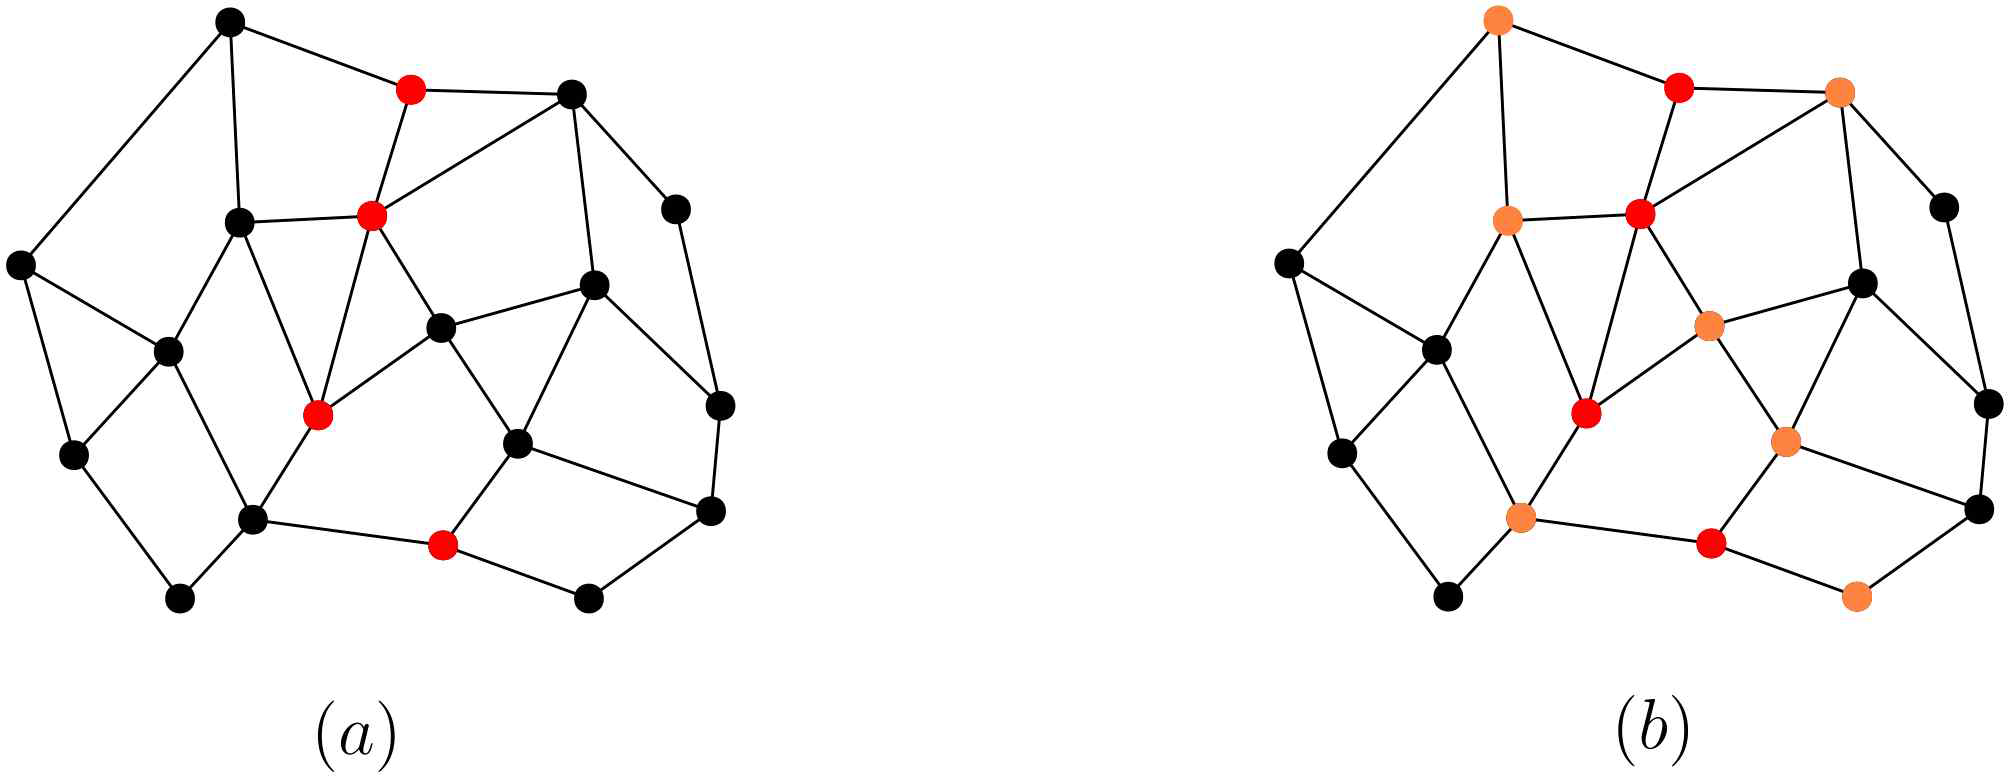 (a) 단위 원 그래프를 변형시켜 얻은 평면 그래프. 빨간색 점이 평면 그래프의 분리 집합을 의미한다. (b) 평면 그래프의 분리 집합의 이웃 (주황색 점집합)과 분리 집합 그 자체 (빨간색 점집합)과 대응되는 단위 원 그래프의 정점 집합은 단위 원 그래프의 분리 집합이 된다